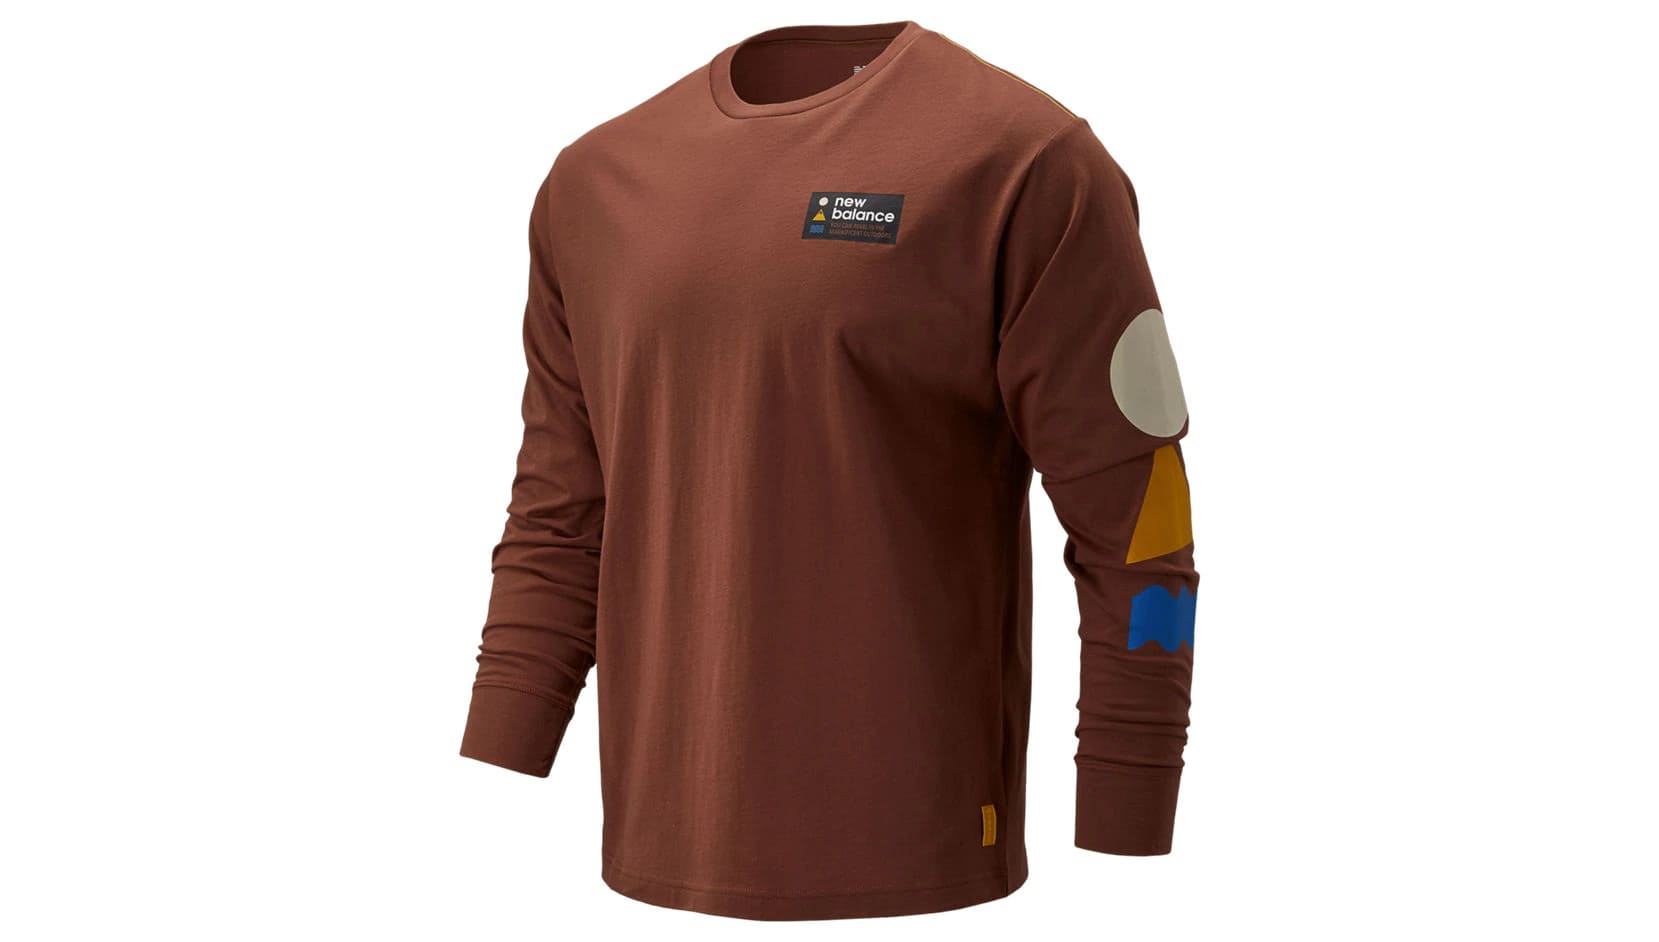 Футболки с длинным рукавом MEN'S 100%COTTON KNITTED T-SHIRT (коричневый) - изображение №1